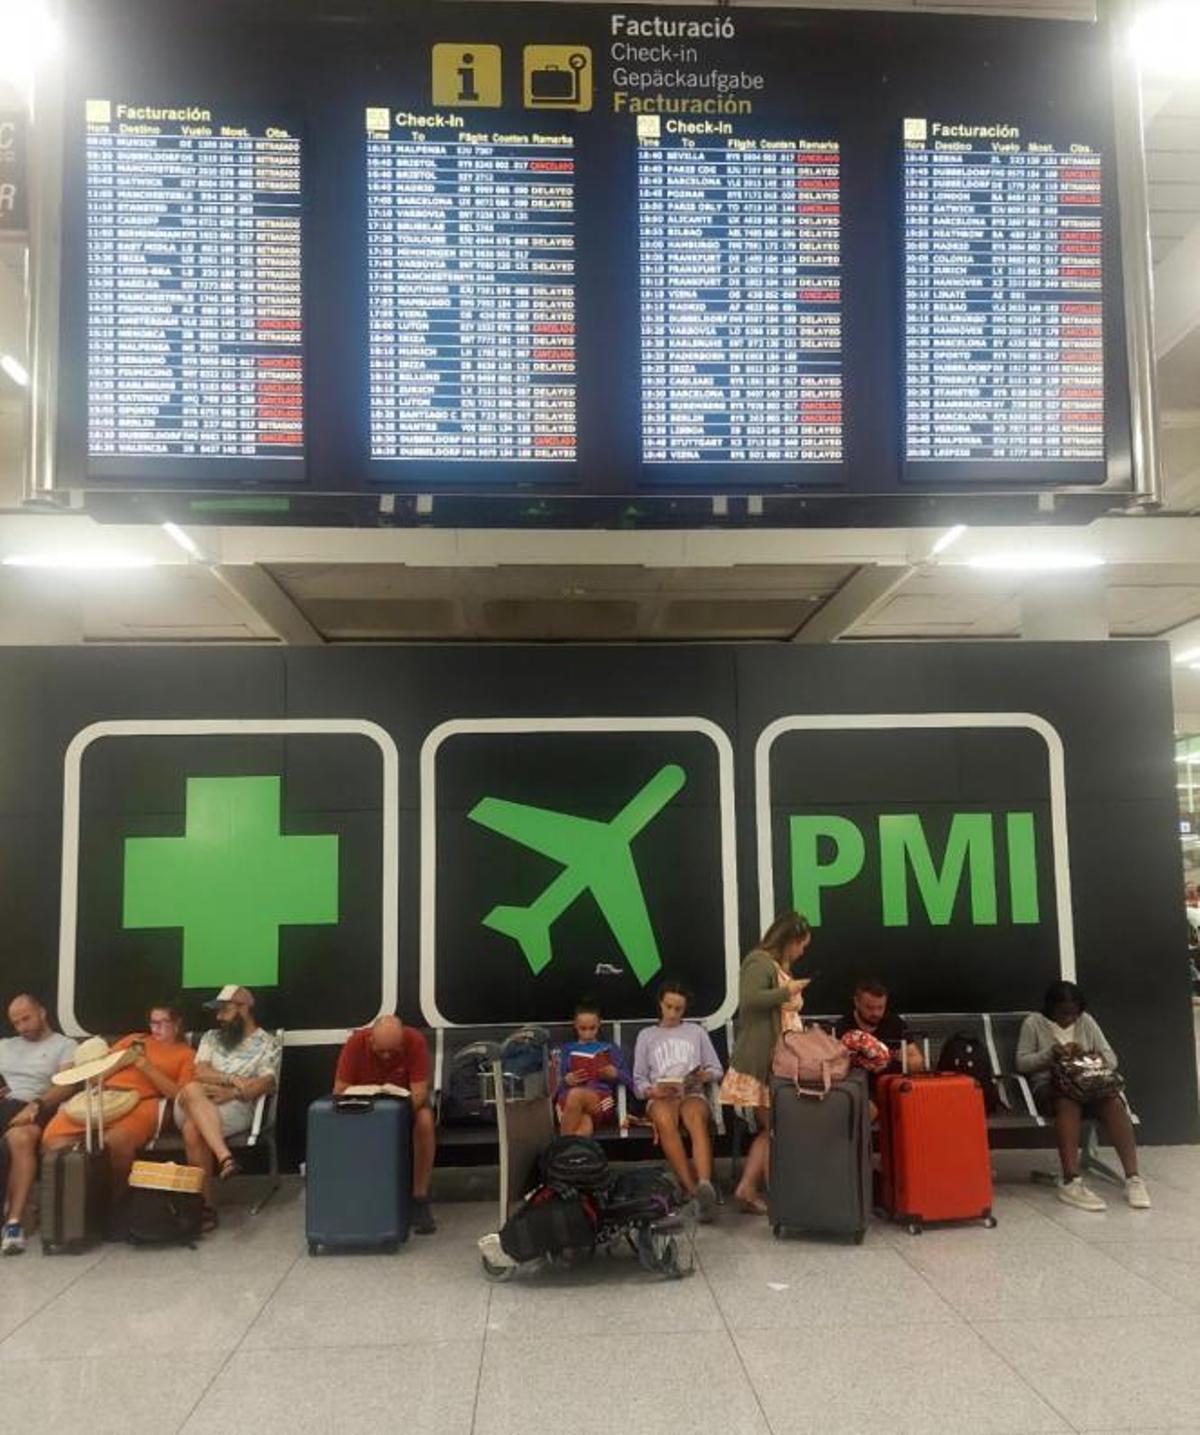 Pasajeros del vuelo cancelado a Barcelona esperan a ser reubicados.  | B. ZELAYA